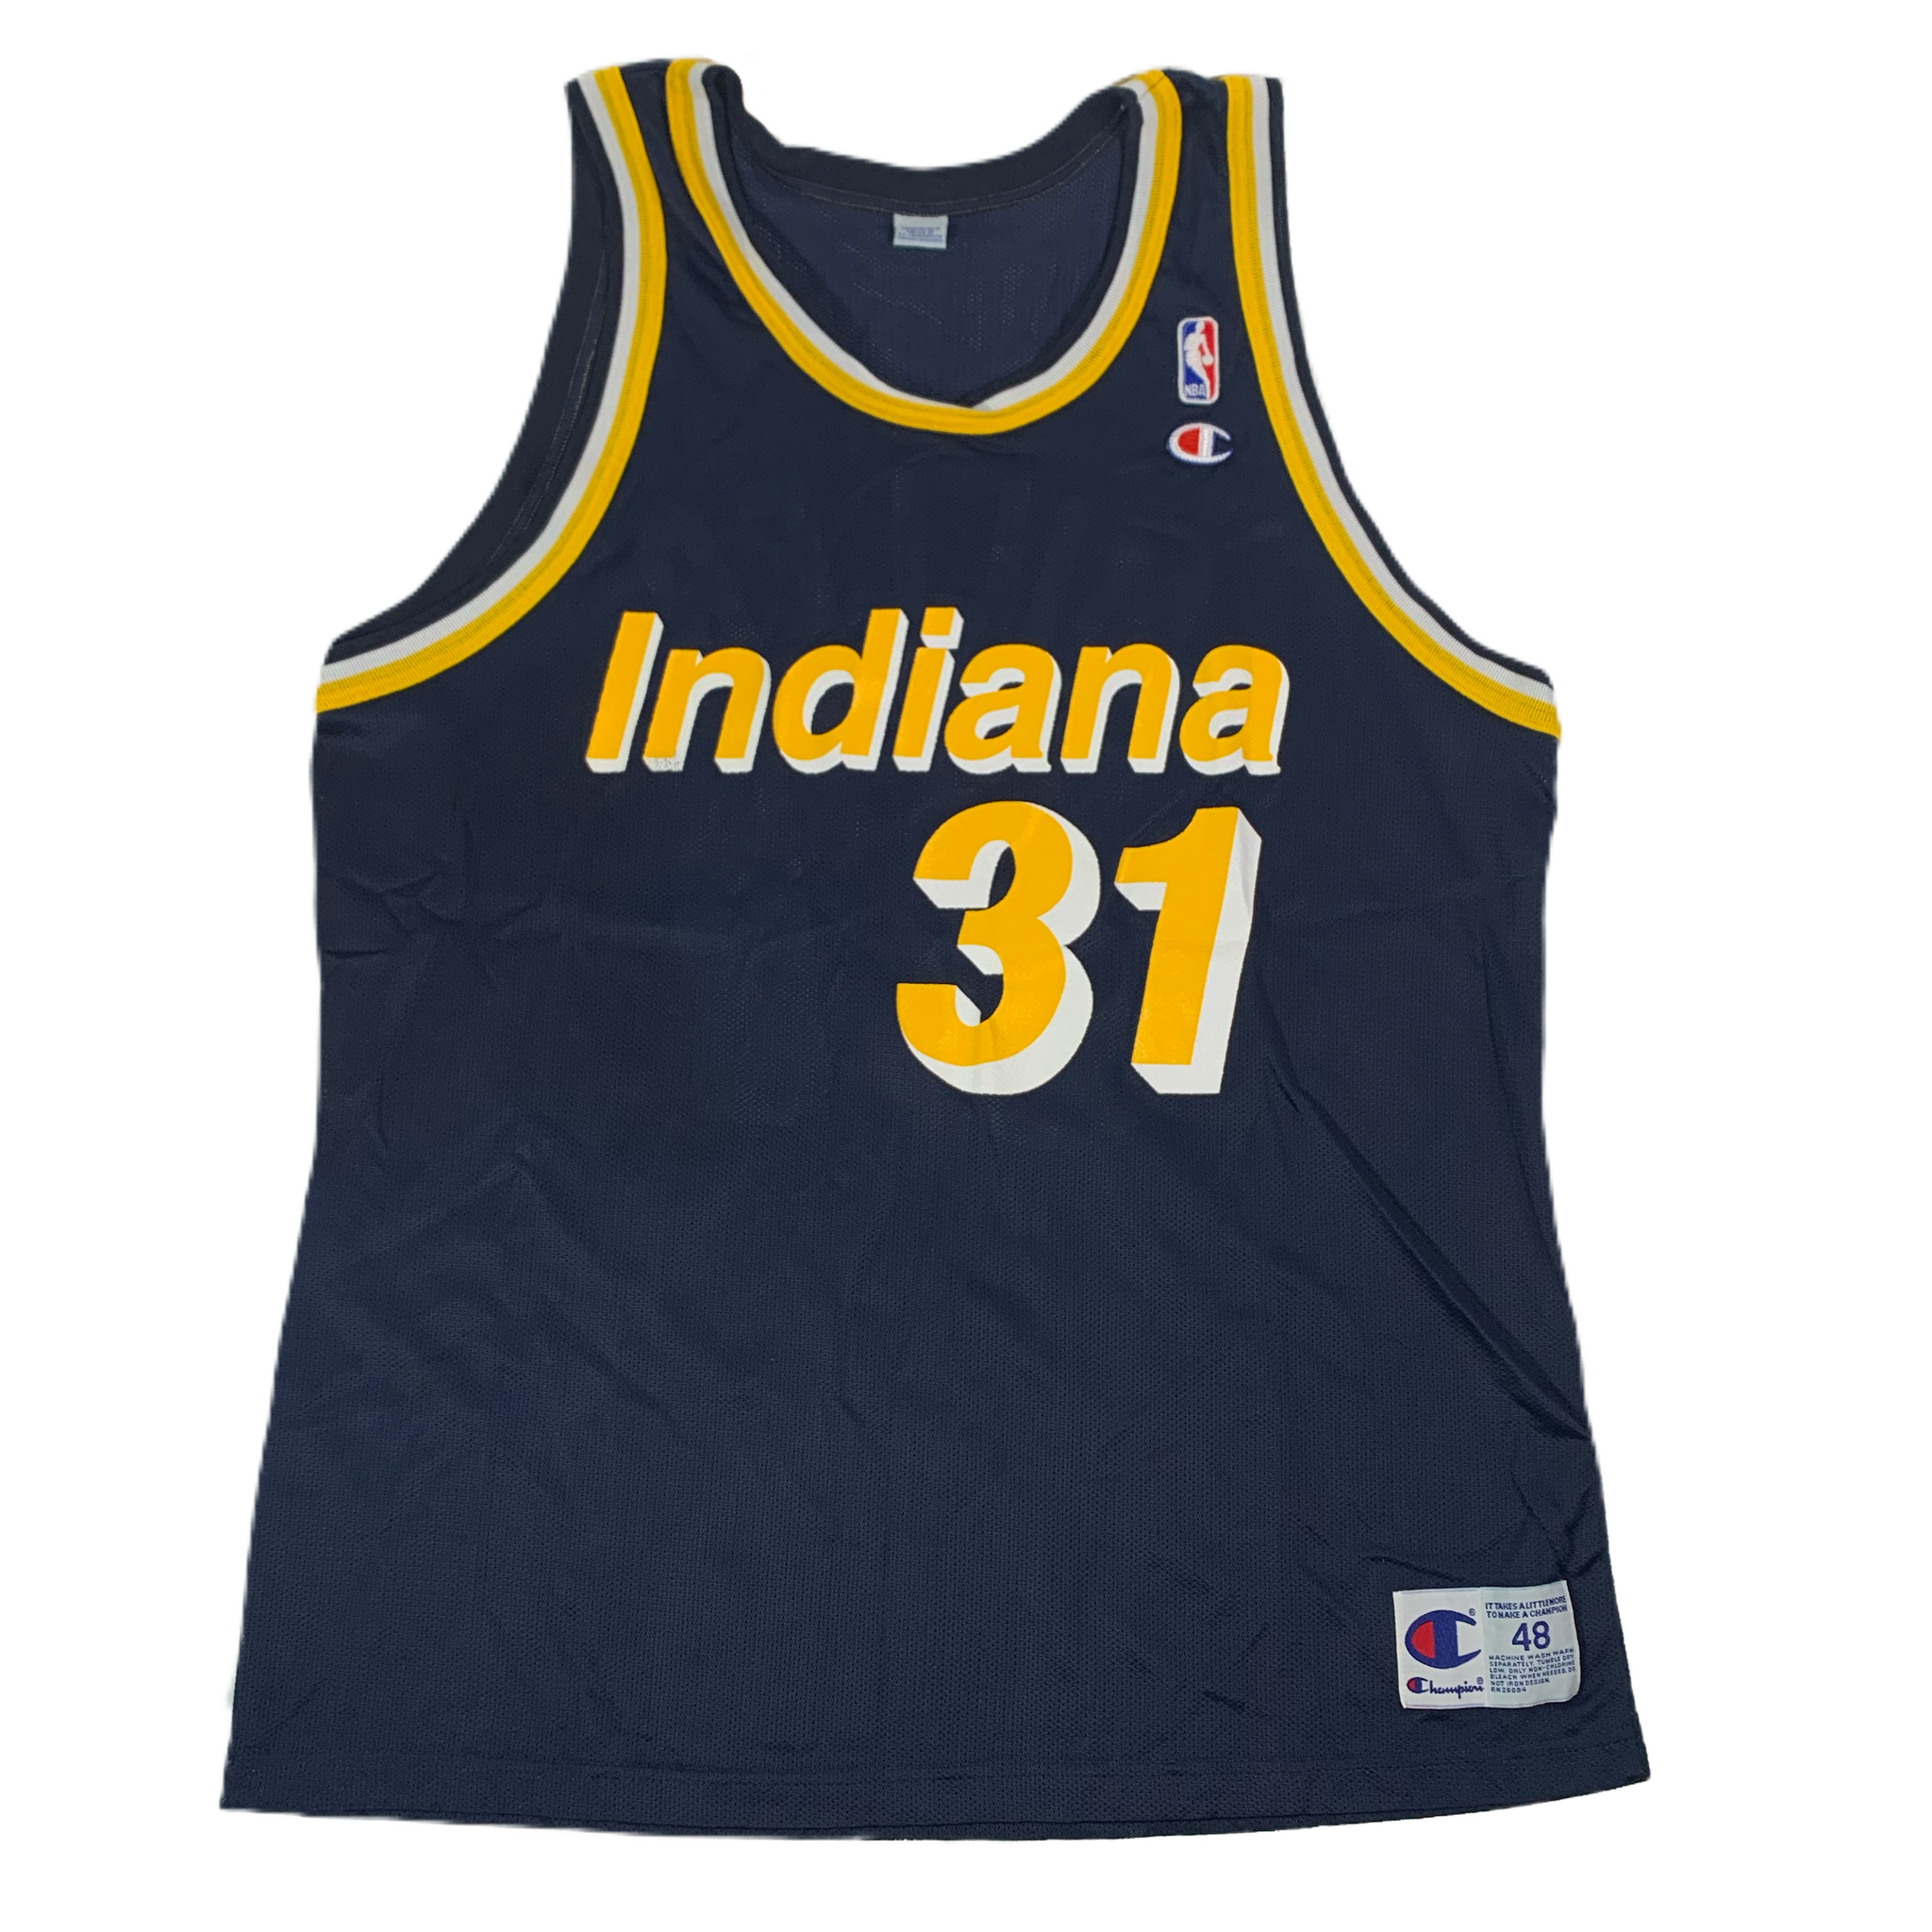 Reggie Miller Jersey - NBA Indiana Pacers Reggie Miller Jerseys